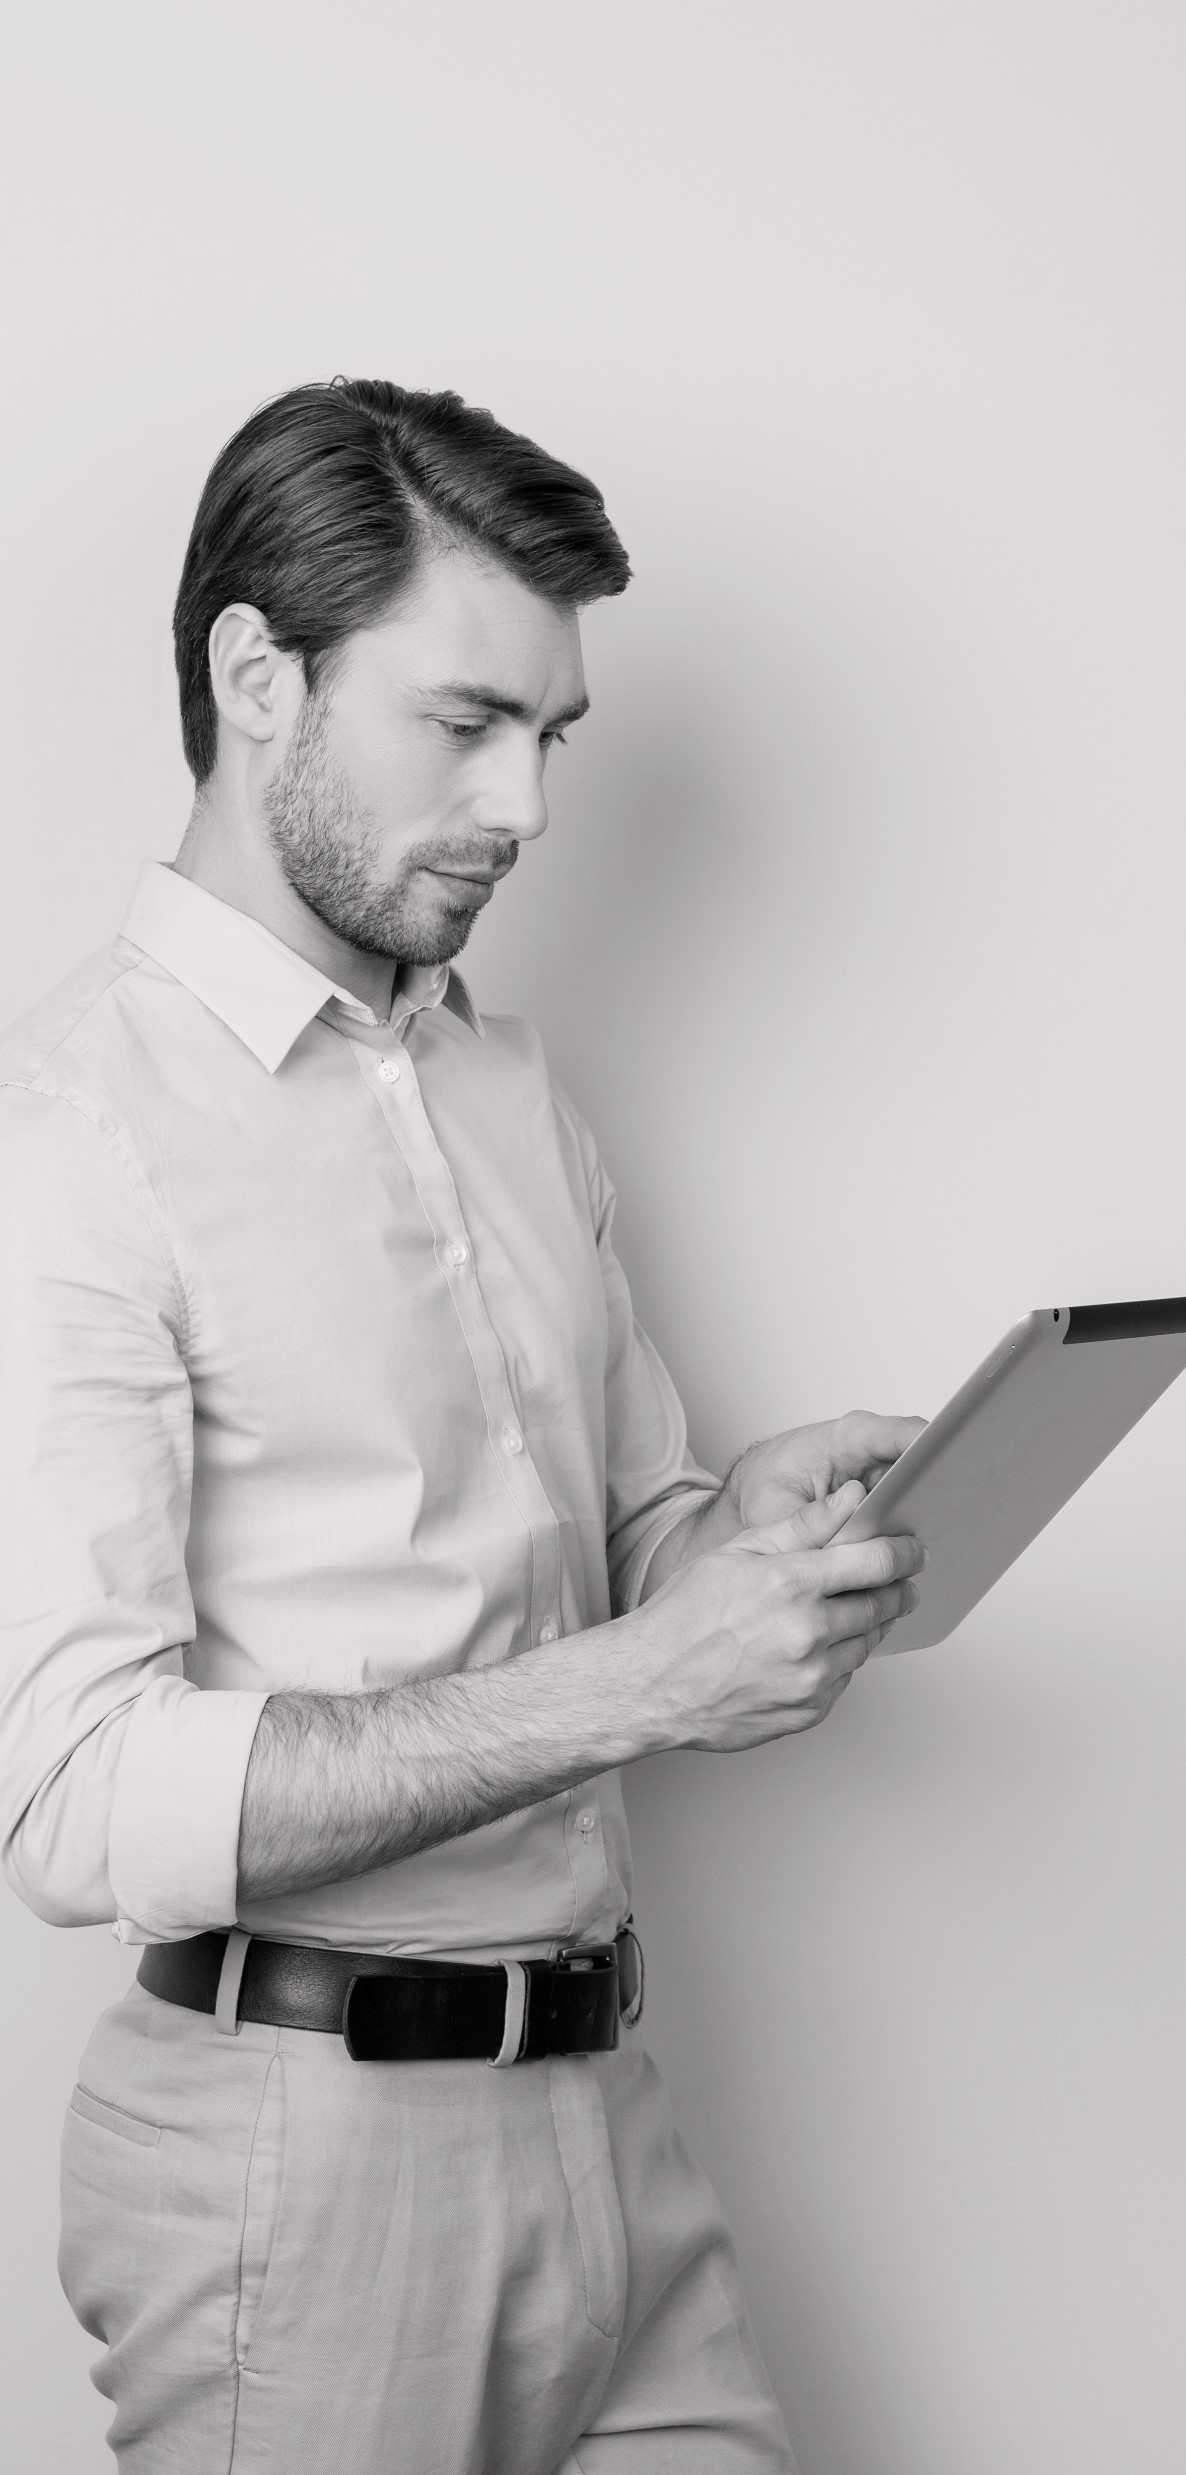 Ein Mann, im Business-Look gekleidet, mit einem Tablet in der Hand